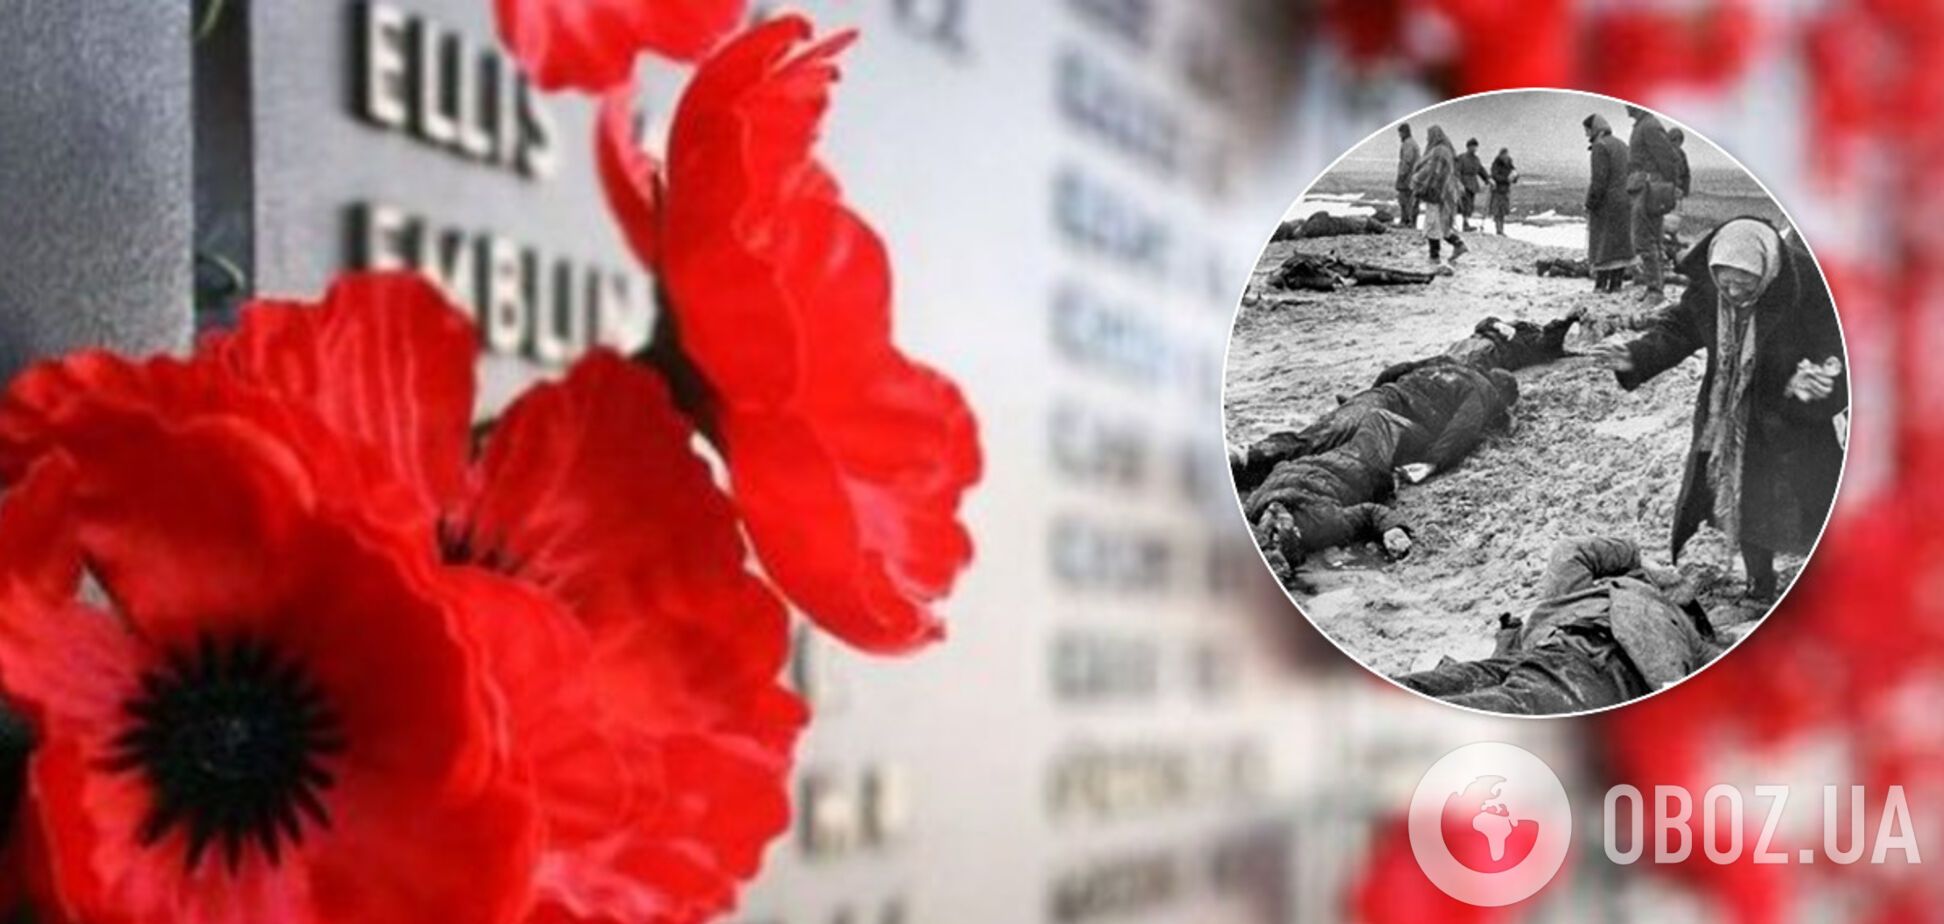 Фашисты убили крымчан и бросили тела в ров: душераздирающее архивное фото всколыхнуло сеть (18+)